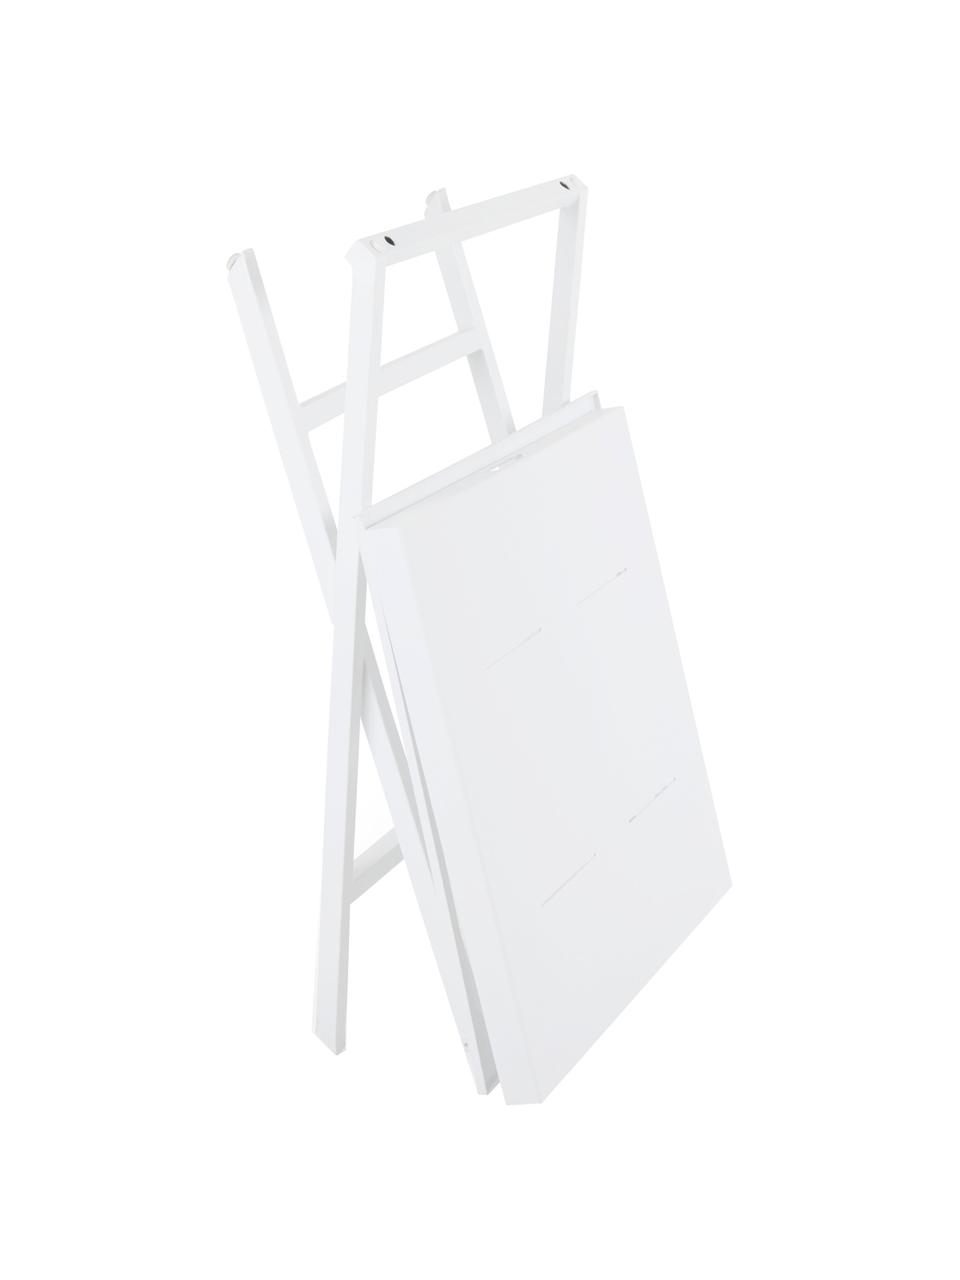 Table d'appoint blanche pliante Vero, Aluminium, enduit, Blanc, mat, larg. 60 x haut. 70 cm